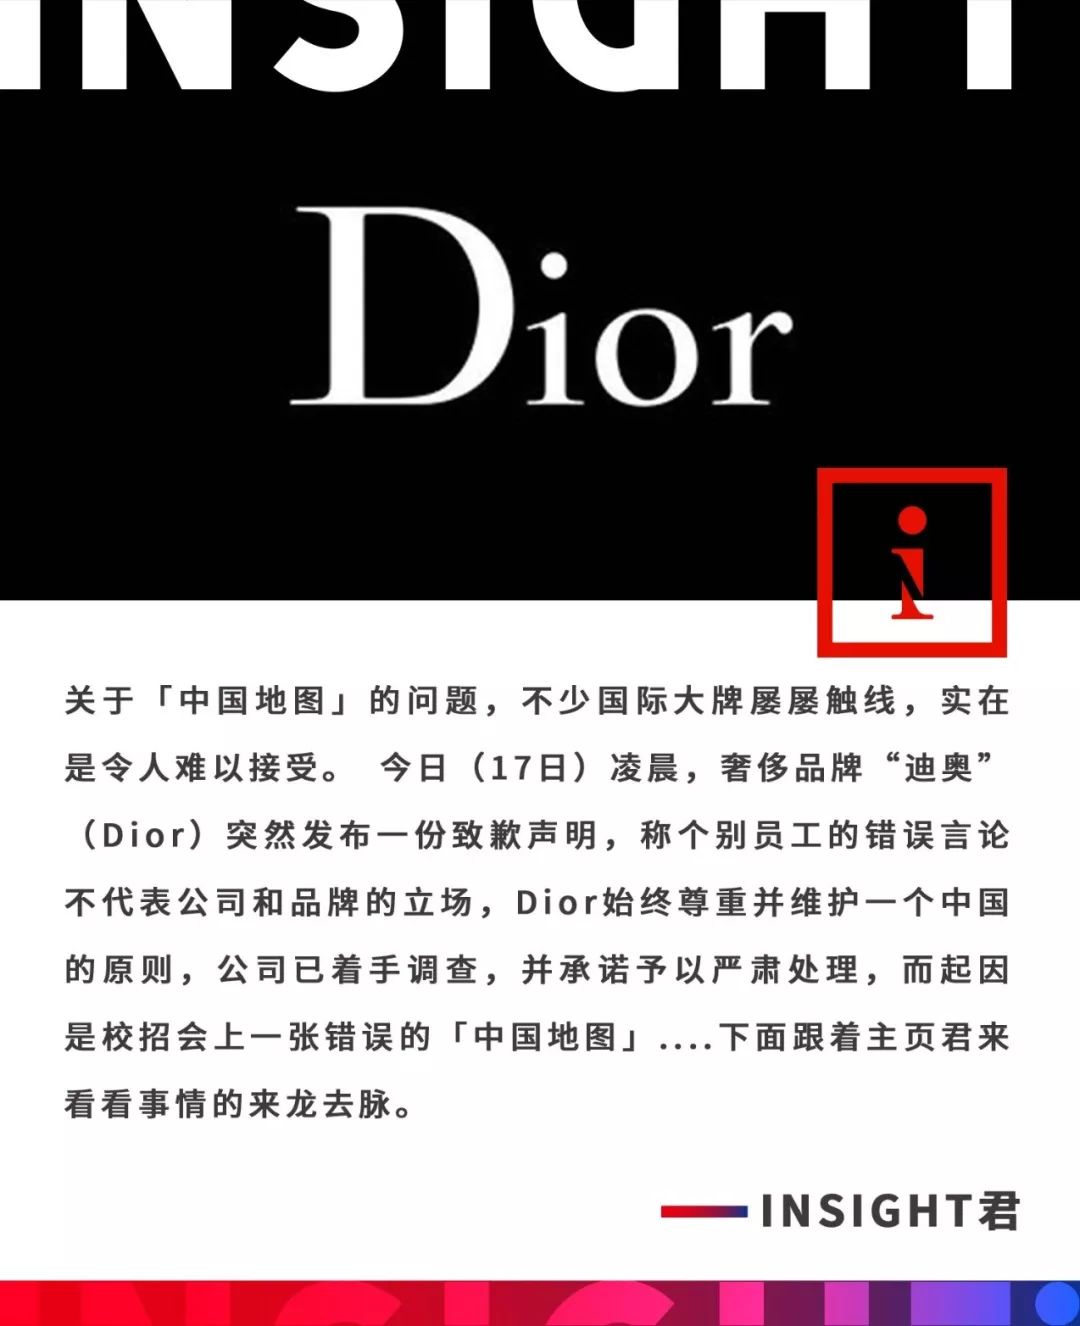 中国地图竟然没台湾 Dior被指原则问题后 连夜发声明致歉 Insight视界微信公众号文章